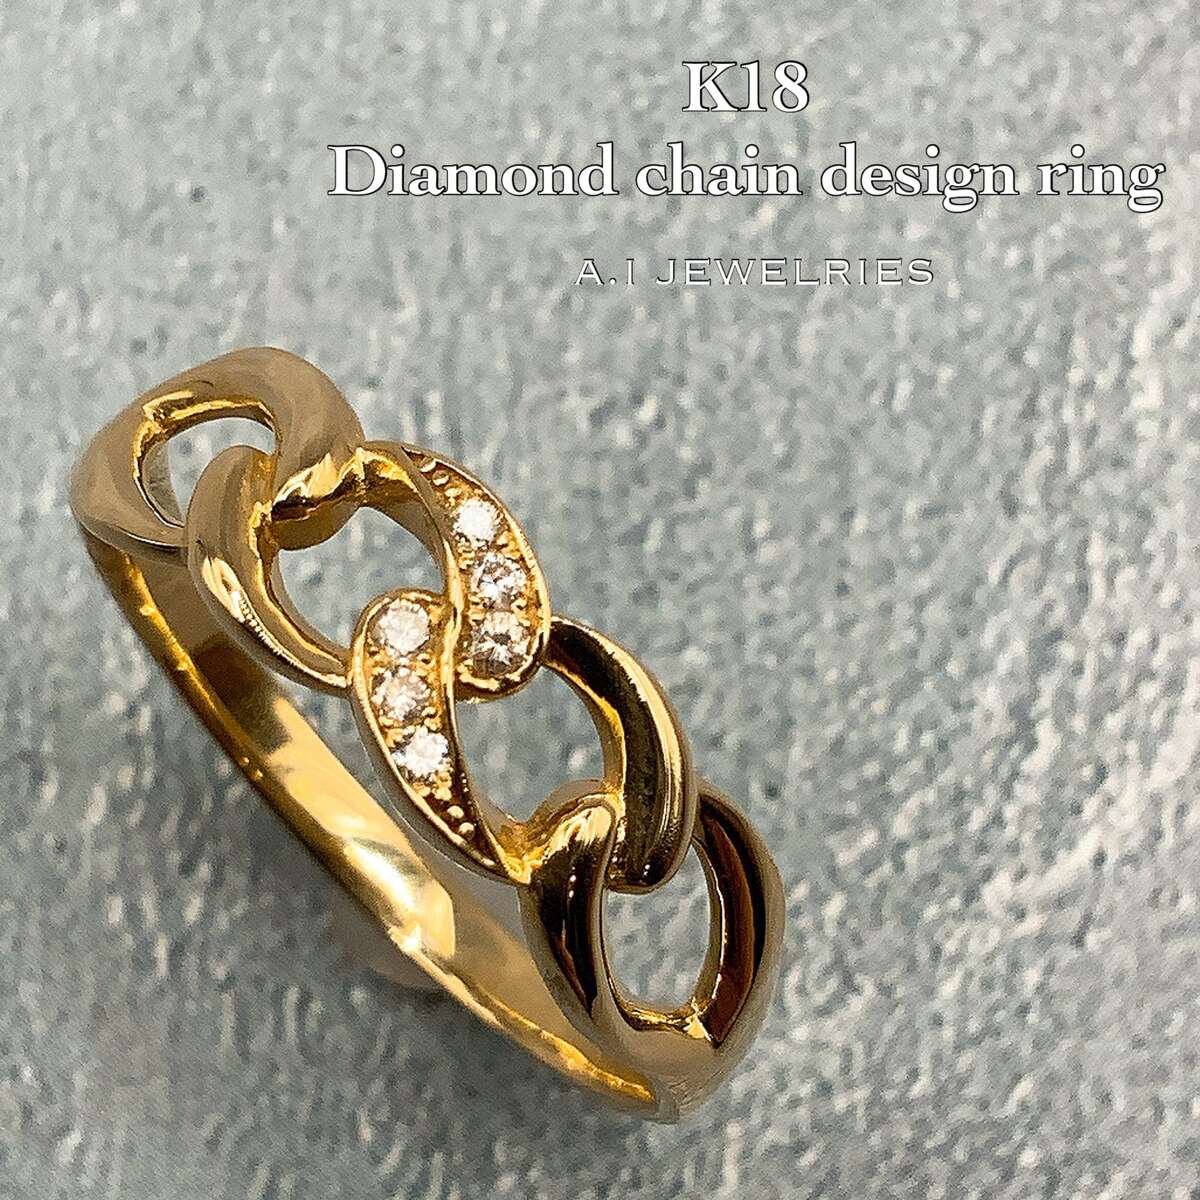 この商品は K18 18金 ダイヤモンド チェーン デザイン リング / K18 Diamond chain design ring 品番kr-9670 ポイント リング中心に美しいダイヤモンドをセッティングしたオシャレなリングです。2面喜平チェーンをイメージしたデザインでシンプルな印象があります。 -商品詳細- 〜信頼の素材〜K18刻印入りで安心の18金ジュエリー。本物の18金であることを保証する品質保証書付きです。メッキやGPではございません。〜デザイン〜リング中心に美しいダイヤモンドをセッティングしたオシャレなリングです。2面喜平チェーンをイメージしたデザインでシンプルな印象があります。〜ディテイル〜［素材］K18 18金　ダイヤモンド0.04ct［総重量] 約2-3g （重量、カラット数、各寸法は多少個体差がございますので、多少前後することがございます。)サイズ 12号　（有料でサイズ直し可能でございます）ご要望欄に記載か、お問い合わせくださいませ。※ボックスとK18である旨の品質保証書付です。 ショップからのメッセージ ＜エイアイジュエリーズについて＞当店は千葉の船橋にあるK18、プラチナの専門店でございます。現社長で2代目でございまして、先代の創業から約20年ネットでジュエリーを扱わせていただいており、実店舗もございます。喜平からロープやアズキのようなデザインチェーンなど。男女にお使いいただけるジュエリーを取り扱っておりますその他ペンダントやリングなどもございます。K18のような地金のジュエリーは身に着ける資産、楽しむことのできる資産として注目されております。 納期について 店頭在庫があれば2-3日程度での出荷。取り寄せや受注で作成の商品もございますので、その場合はお時間かかる場合もございます。いつまでにほしいなど決まっている場合は、事前に確認のほどよろしくお願いします 4